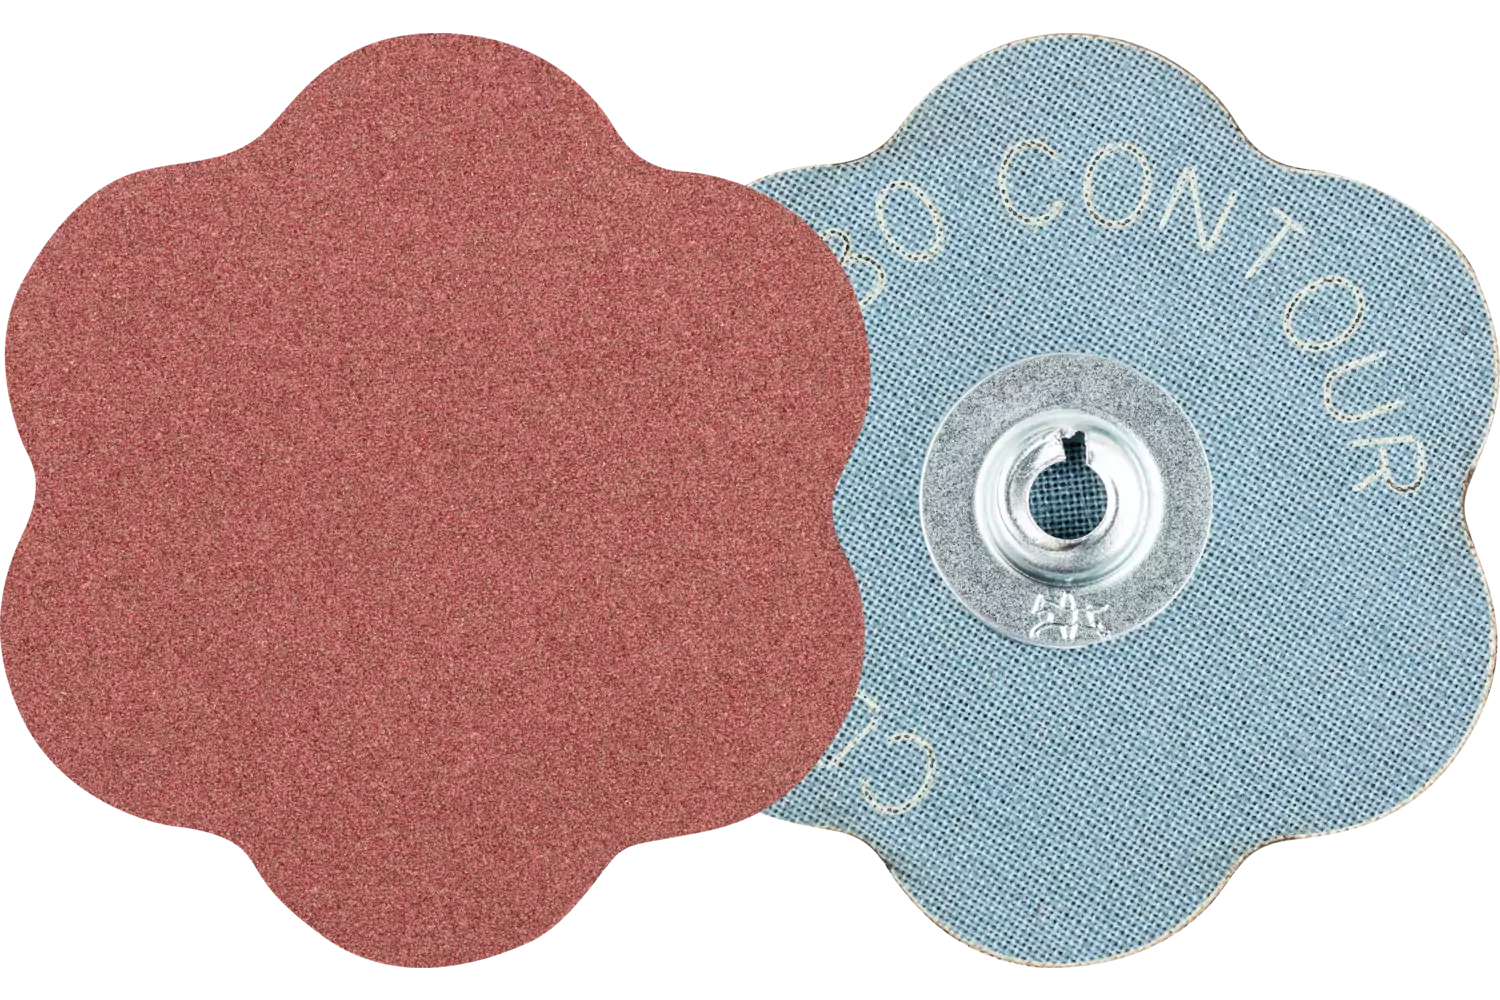 COMBIDISC aluminium oxide abrasive disc CD dia. 60mm A180 CONTOUR for contours 1